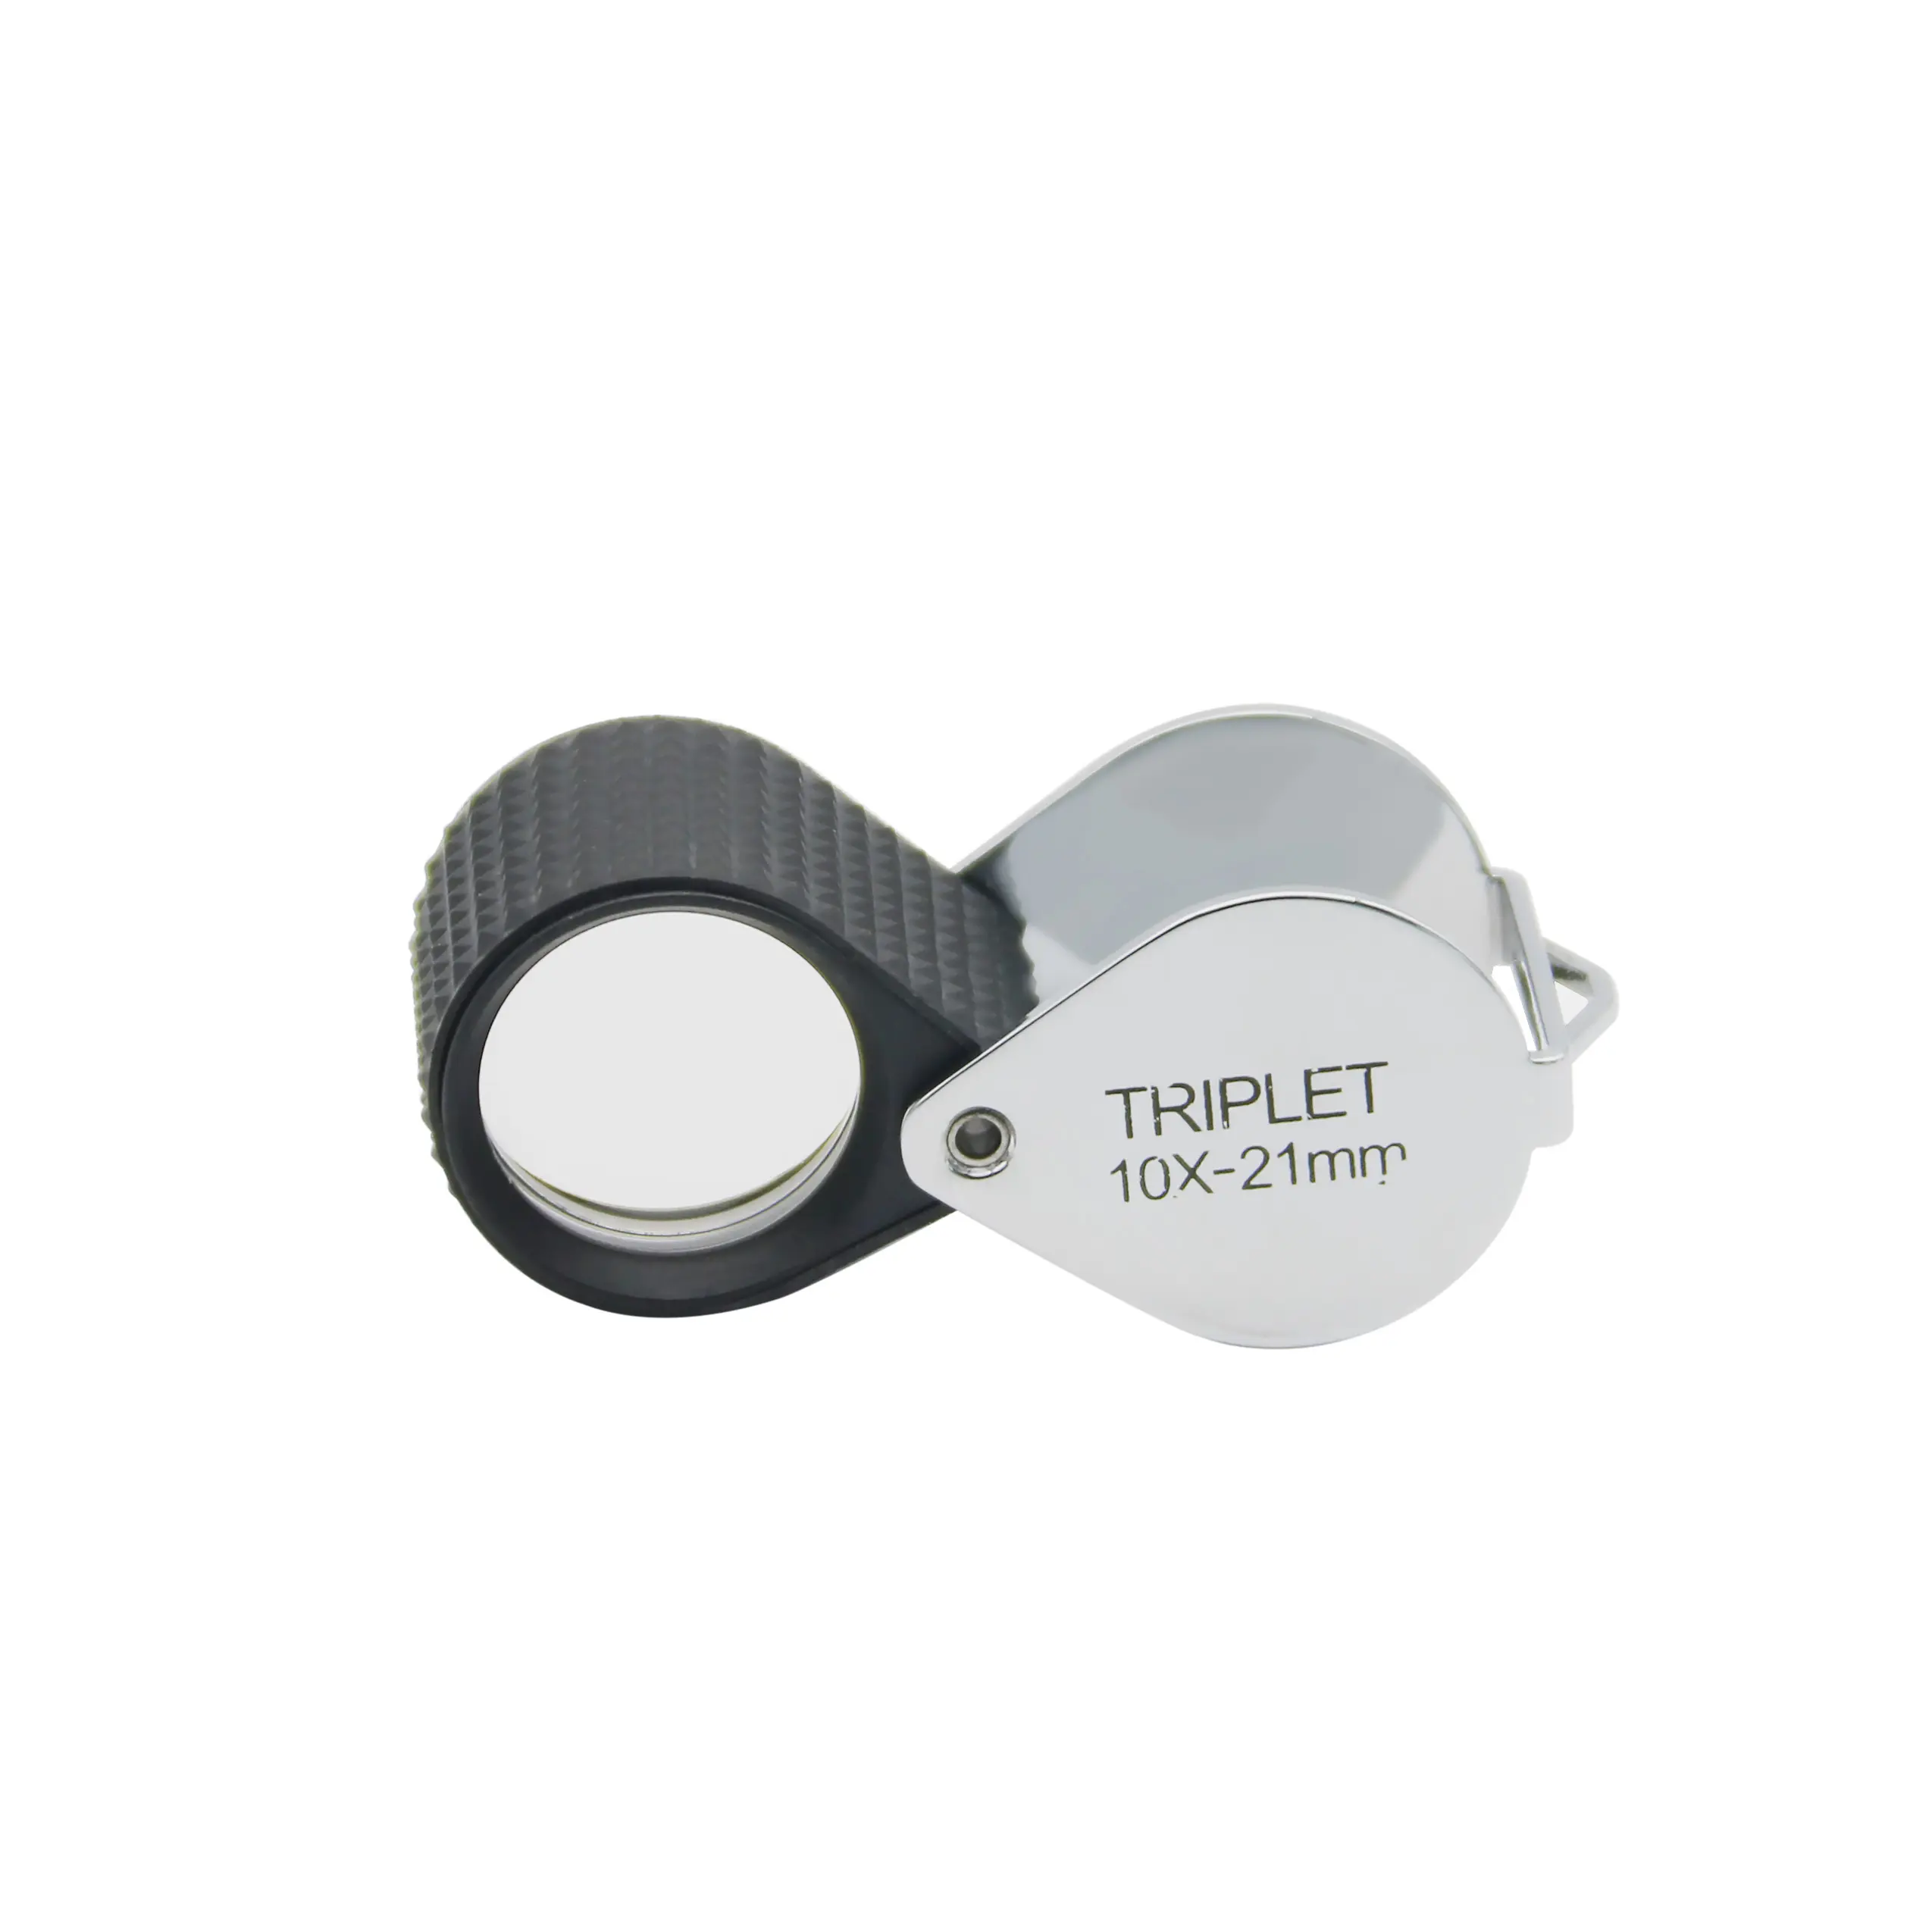 Piccoli strumenti gemologici ottica tascabile portatile di migliore qualità per gioiellieri e gemmologi marca fatable Triplet 10x Loupe